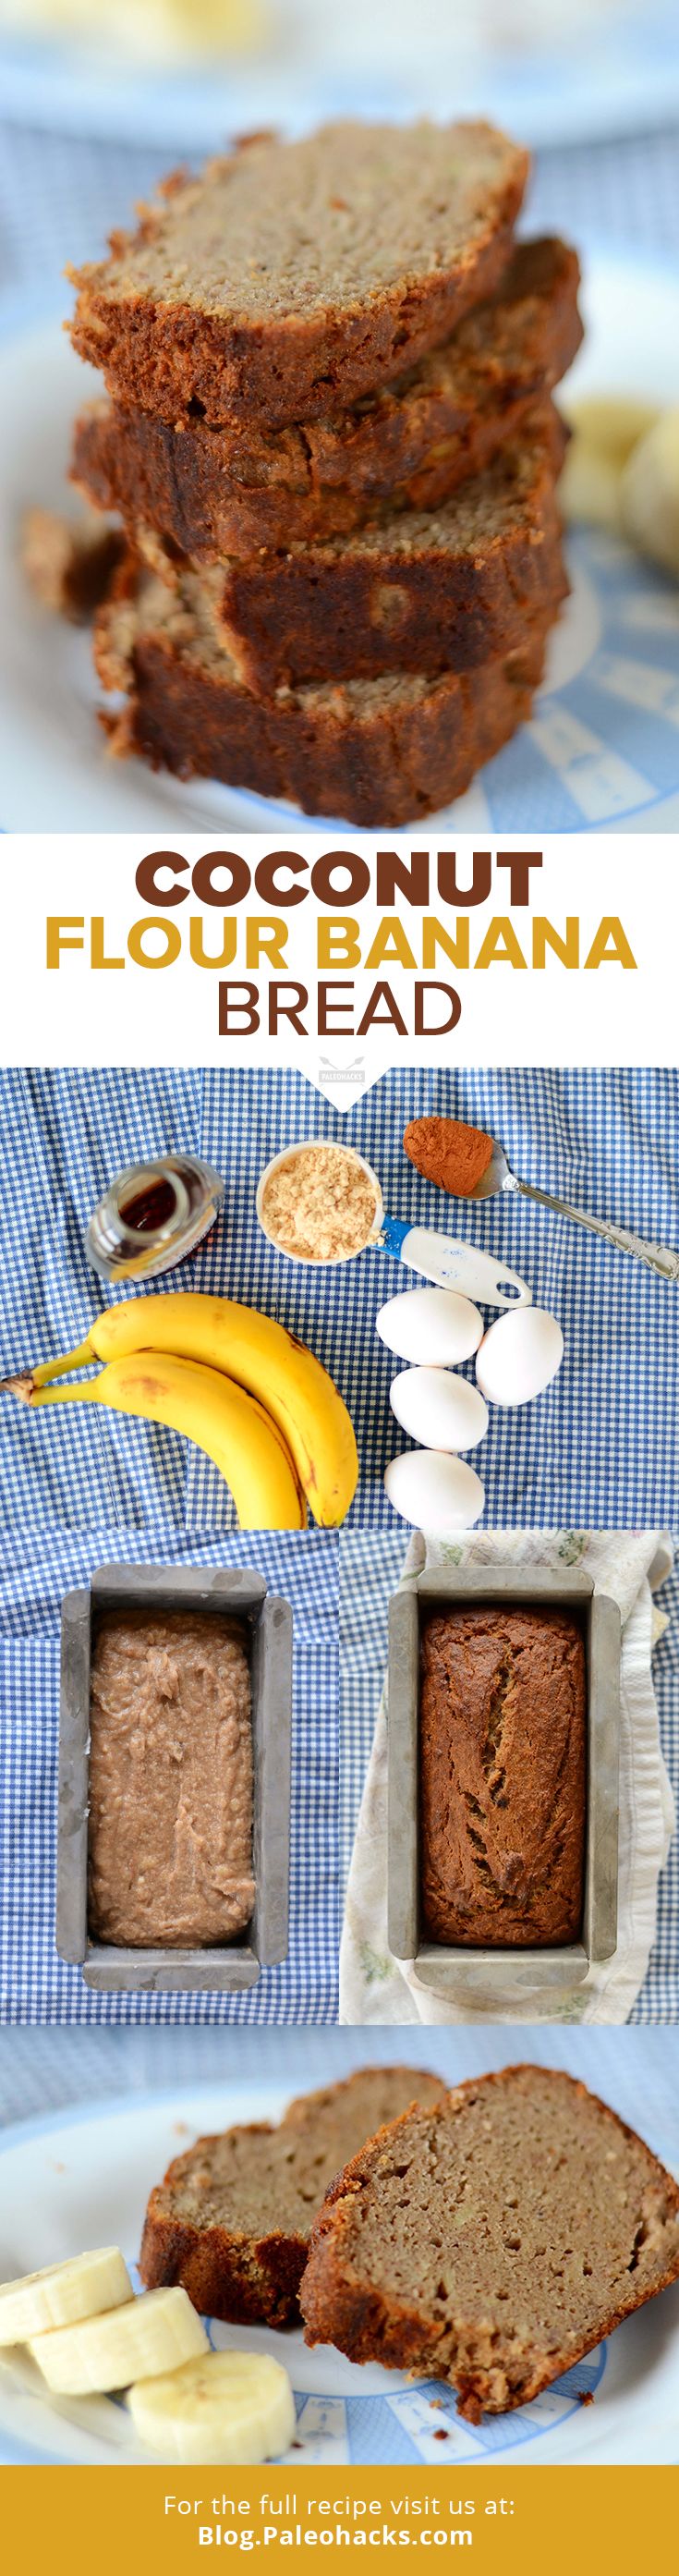 banana bread recipe